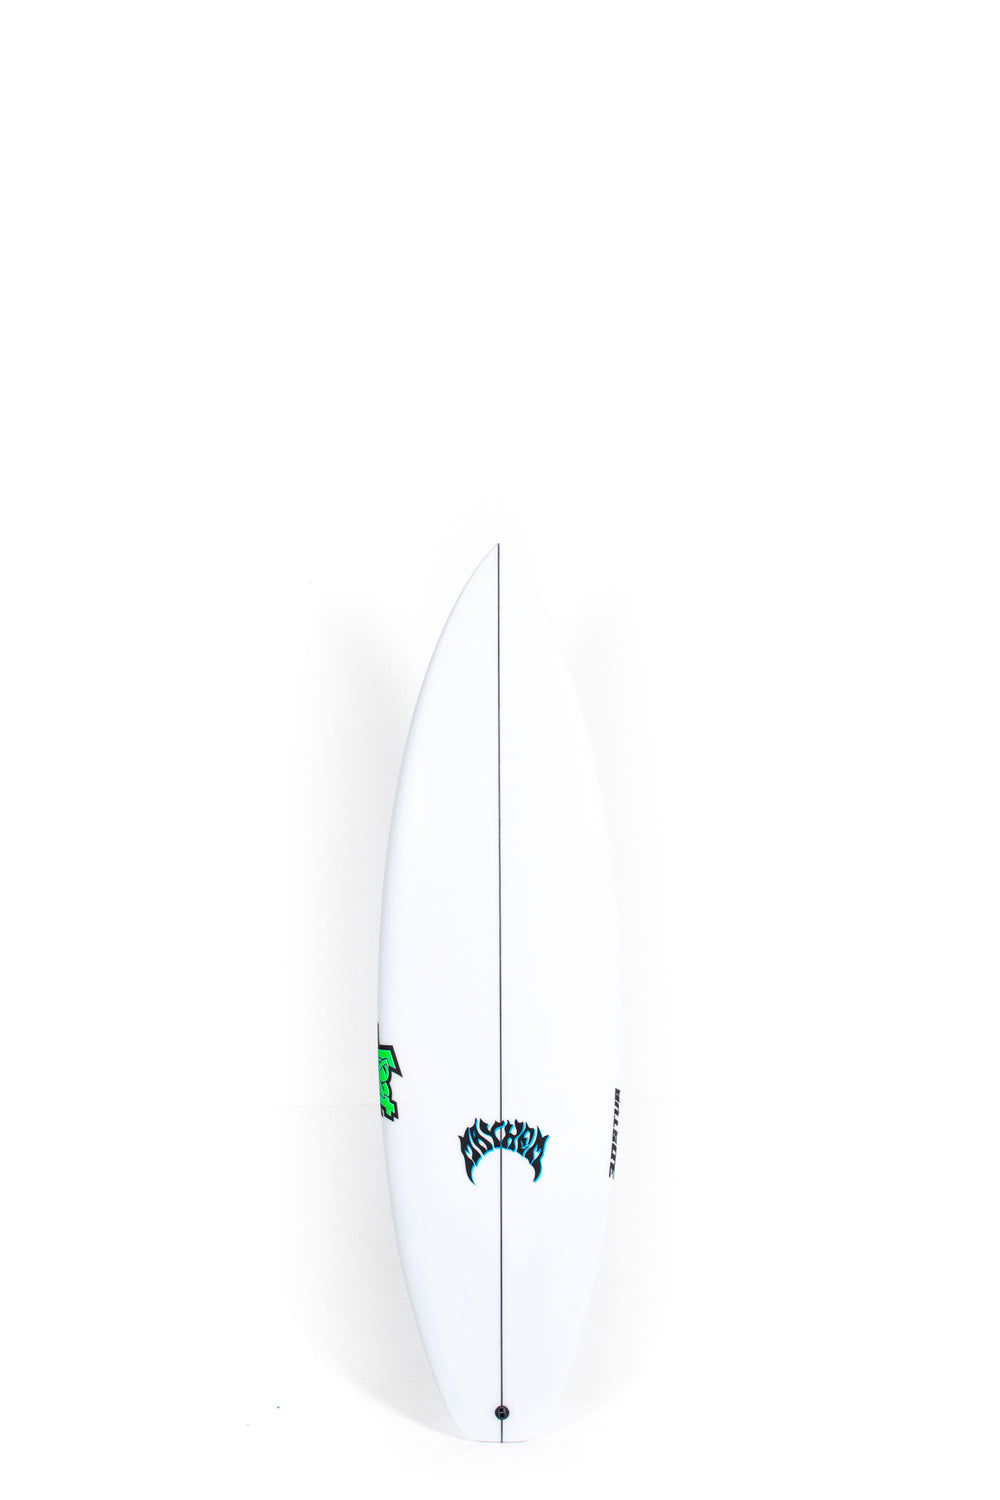 Lost Surfboard - 3.0_STUB DRIVER by Matt Biolos - 5’7” x 18.50